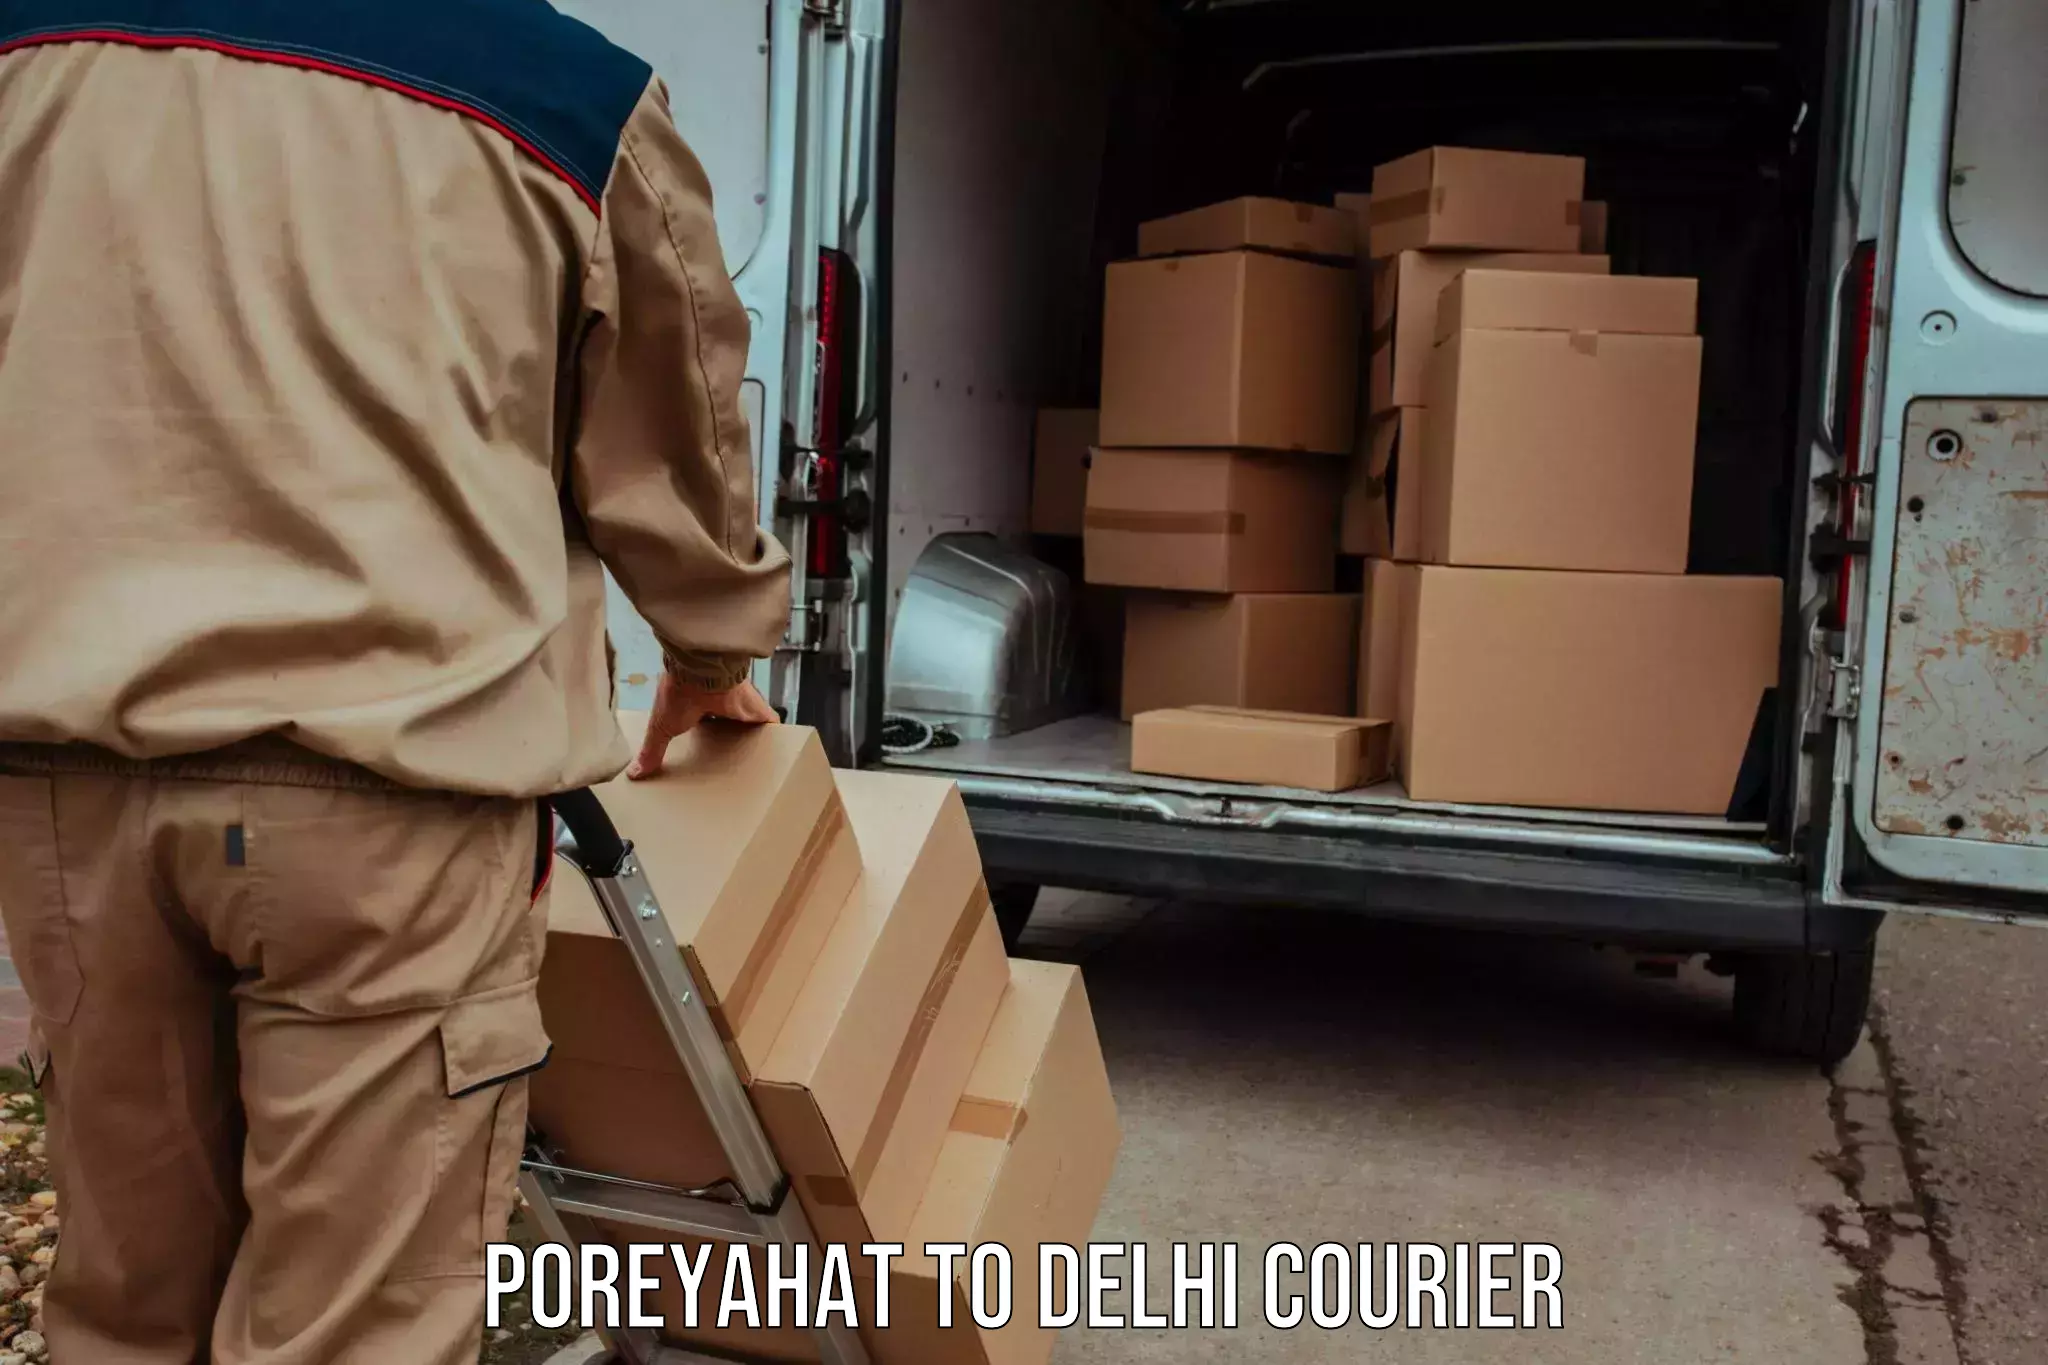 High-efficiency logistics Poreyahat to Delhi